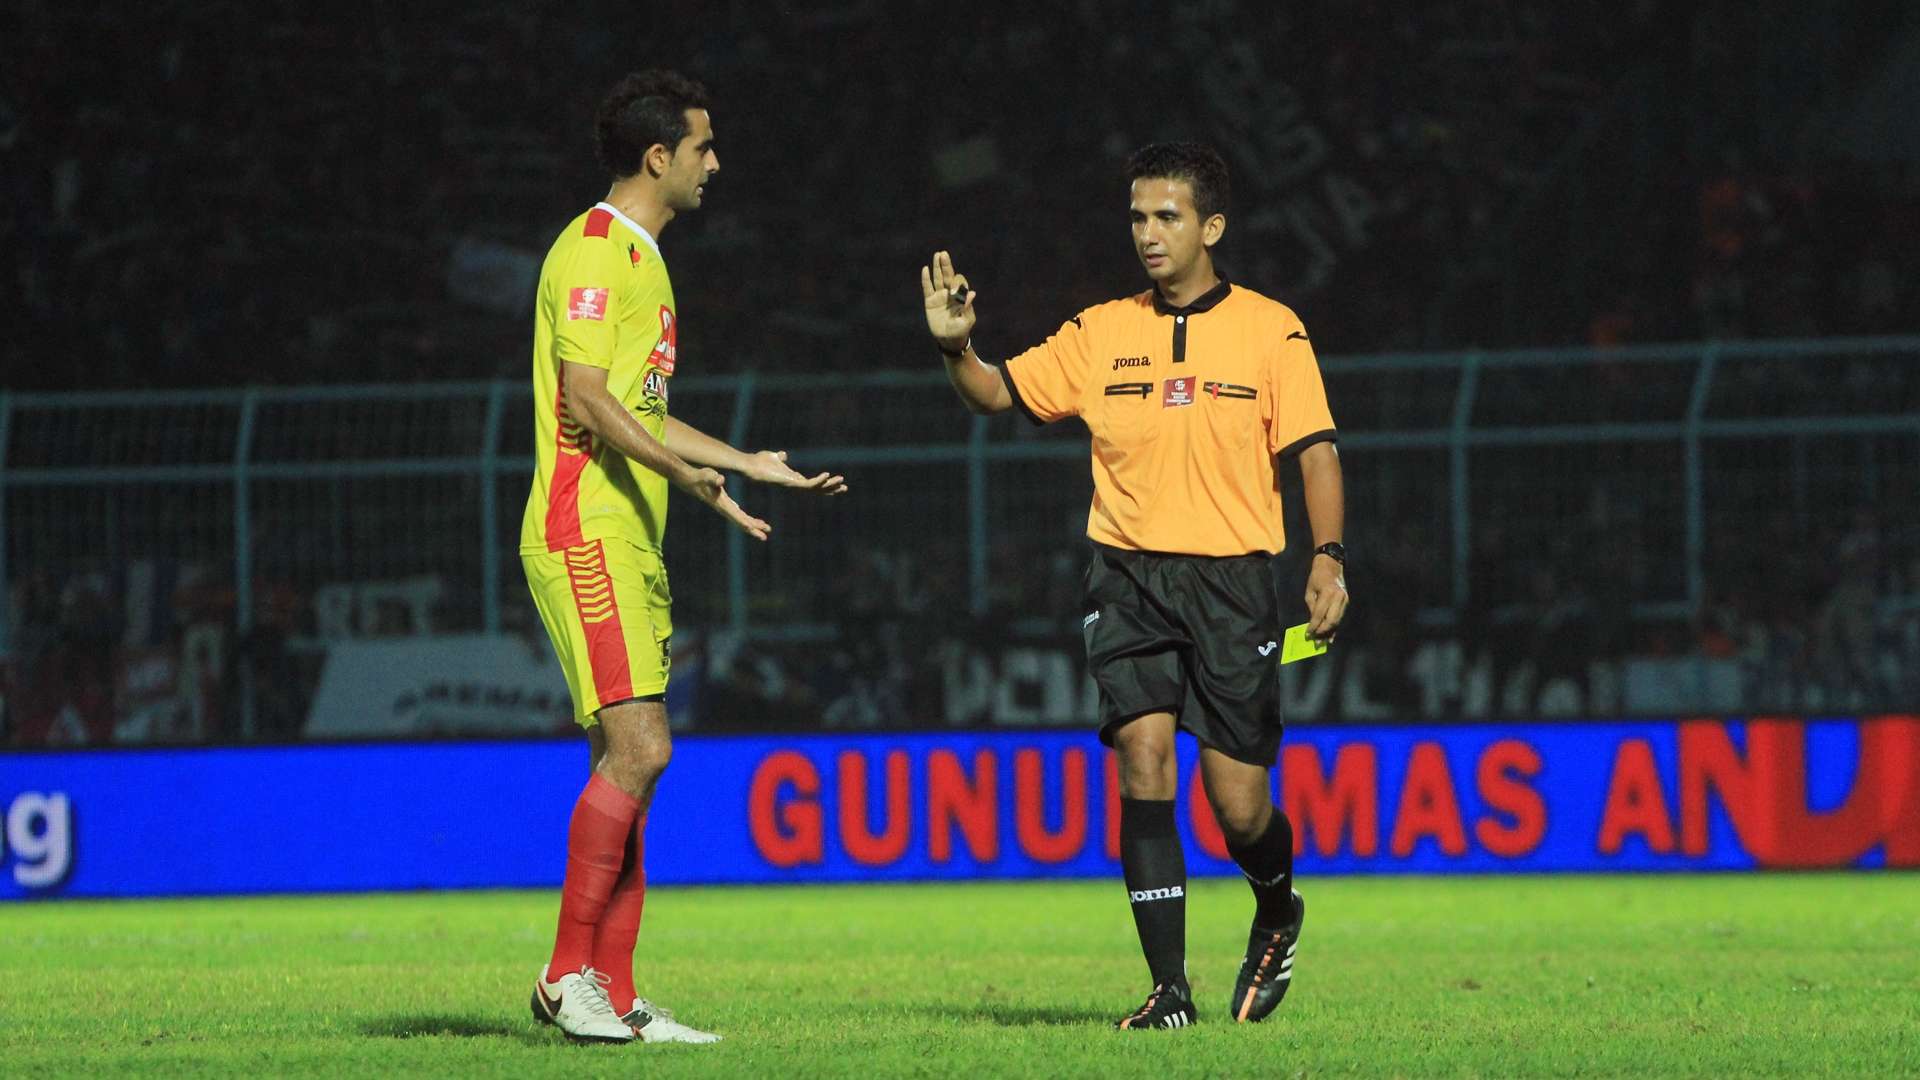 Thoriq Alkatiri Wasit & Otavio Dutra - Bhayangkara Surabaya United